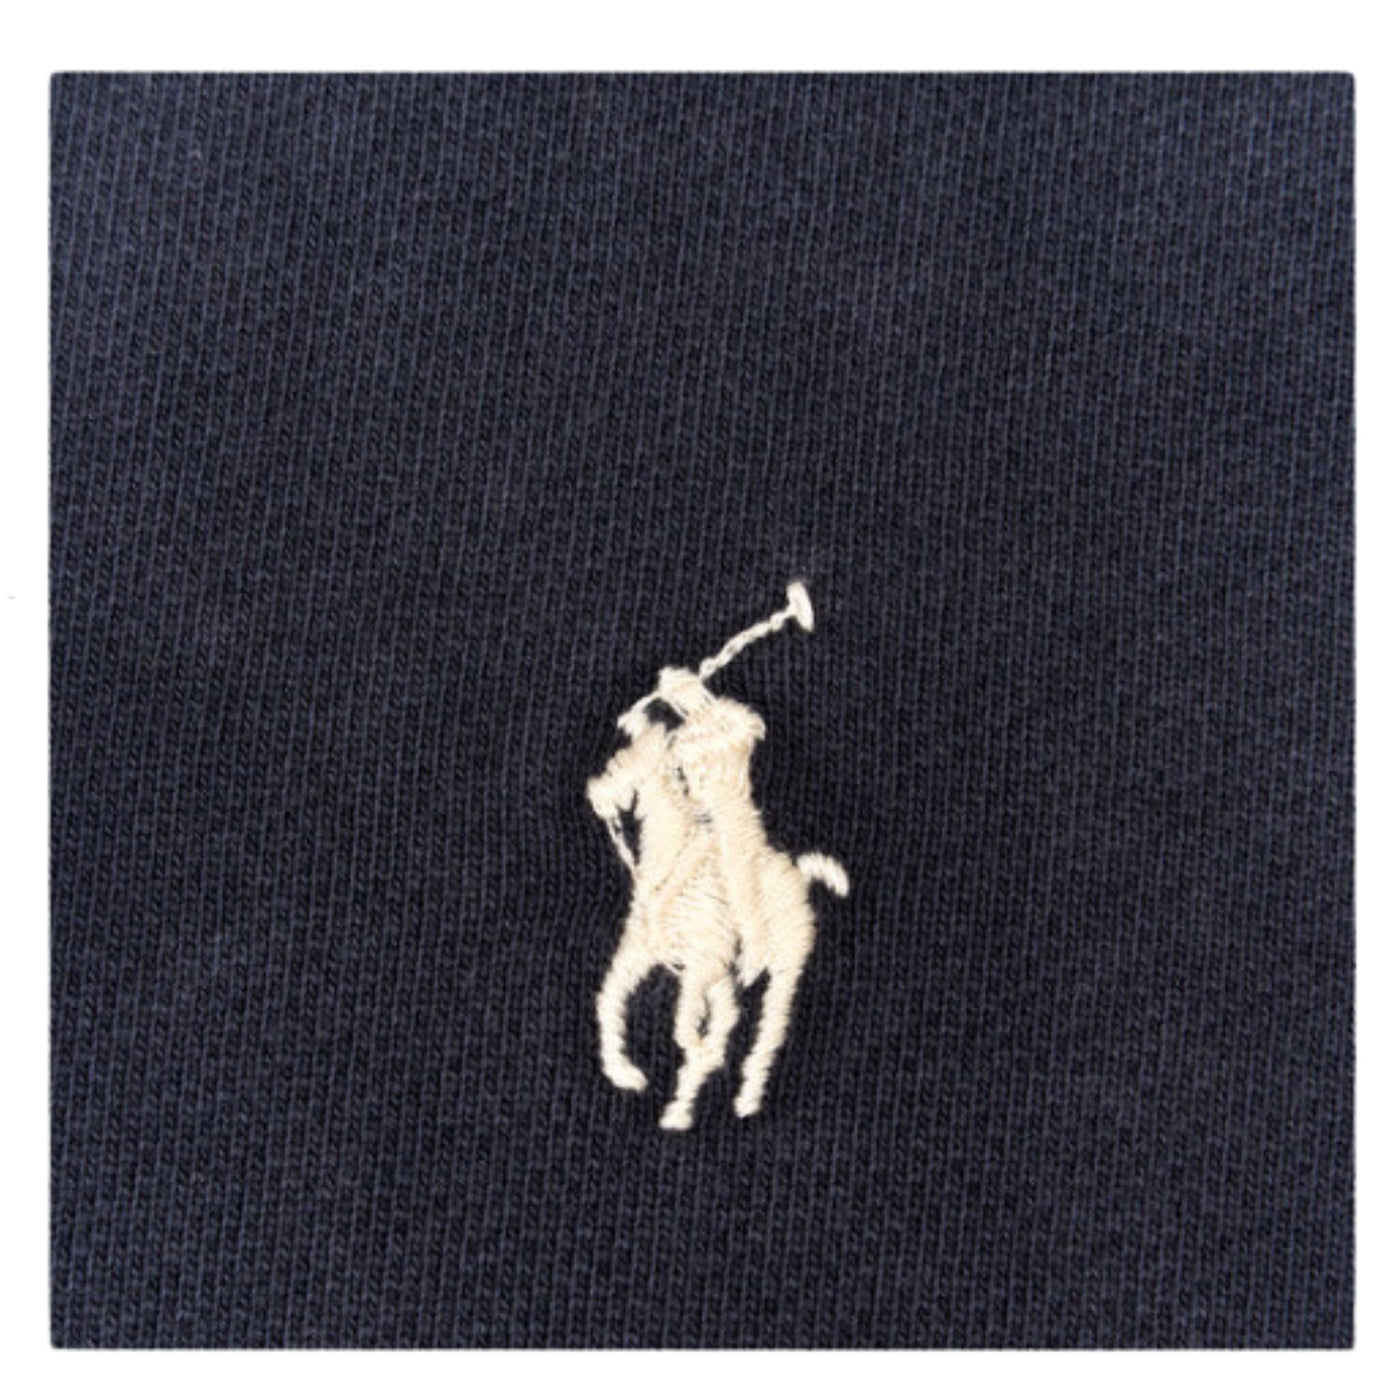 Dettaglio del logo Polo Ralph Lauren ricamato sulla felpa da uomo